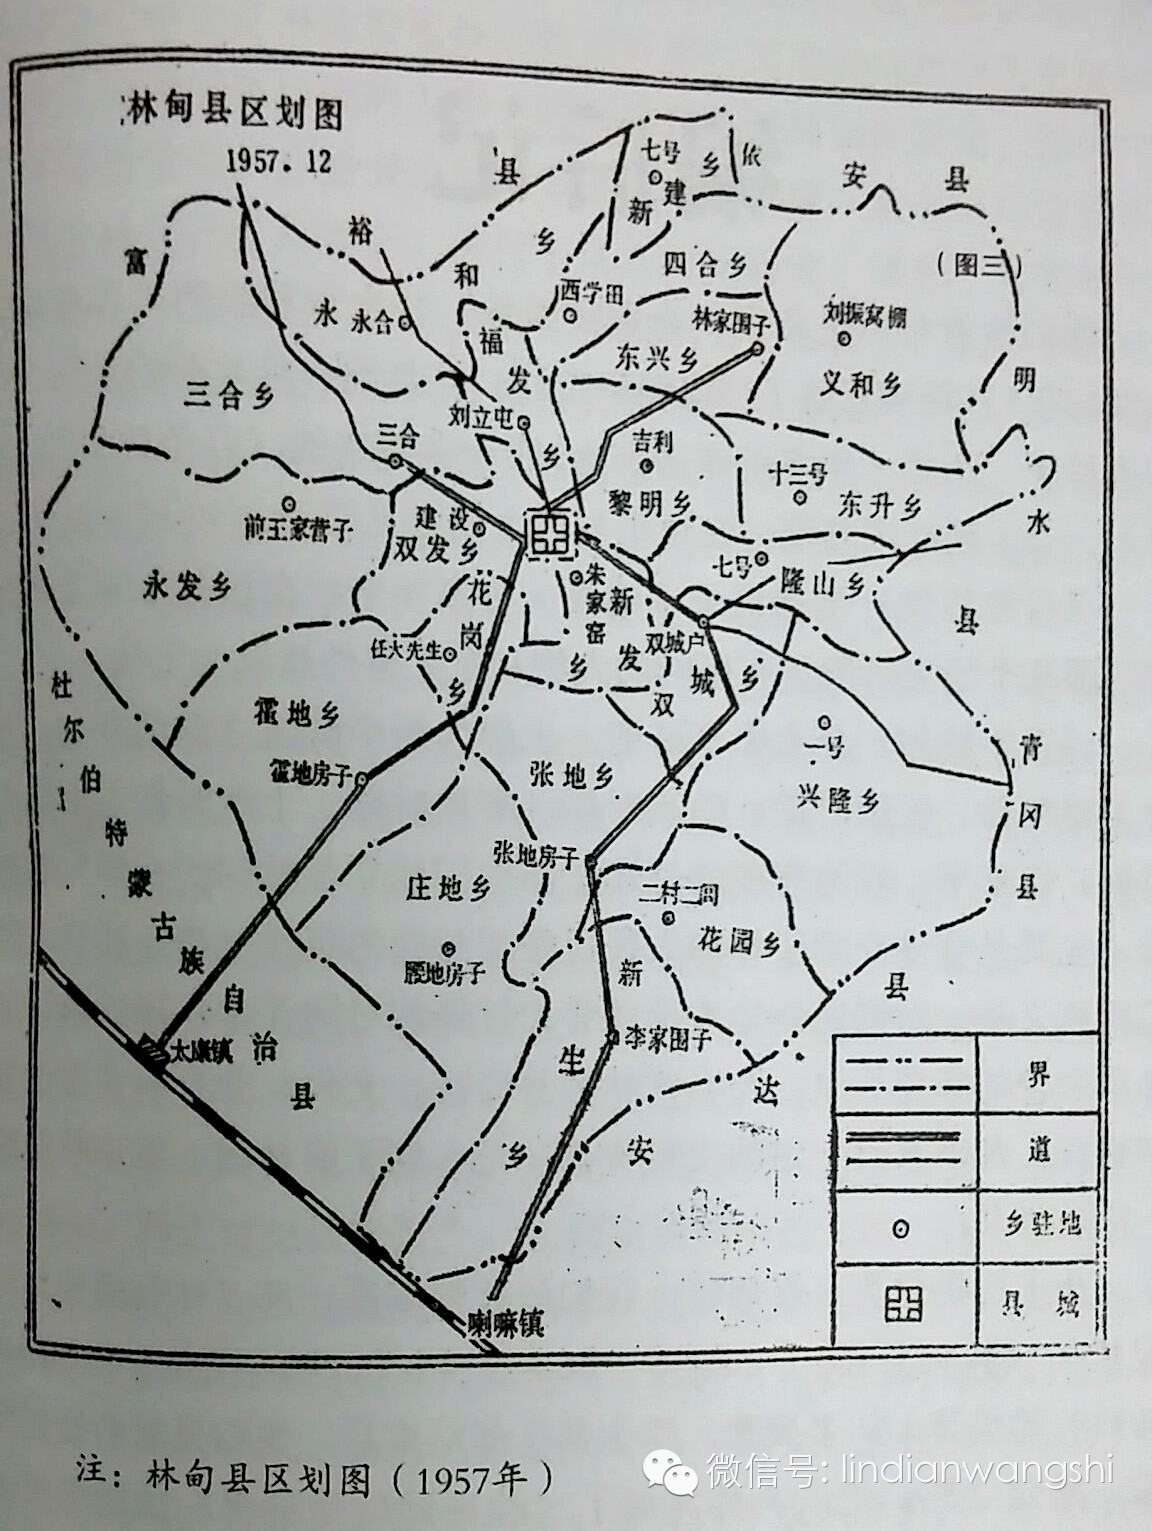 林甸县档案局现存一张最早的林甸县地图,是康德五年(1938年)的地图.